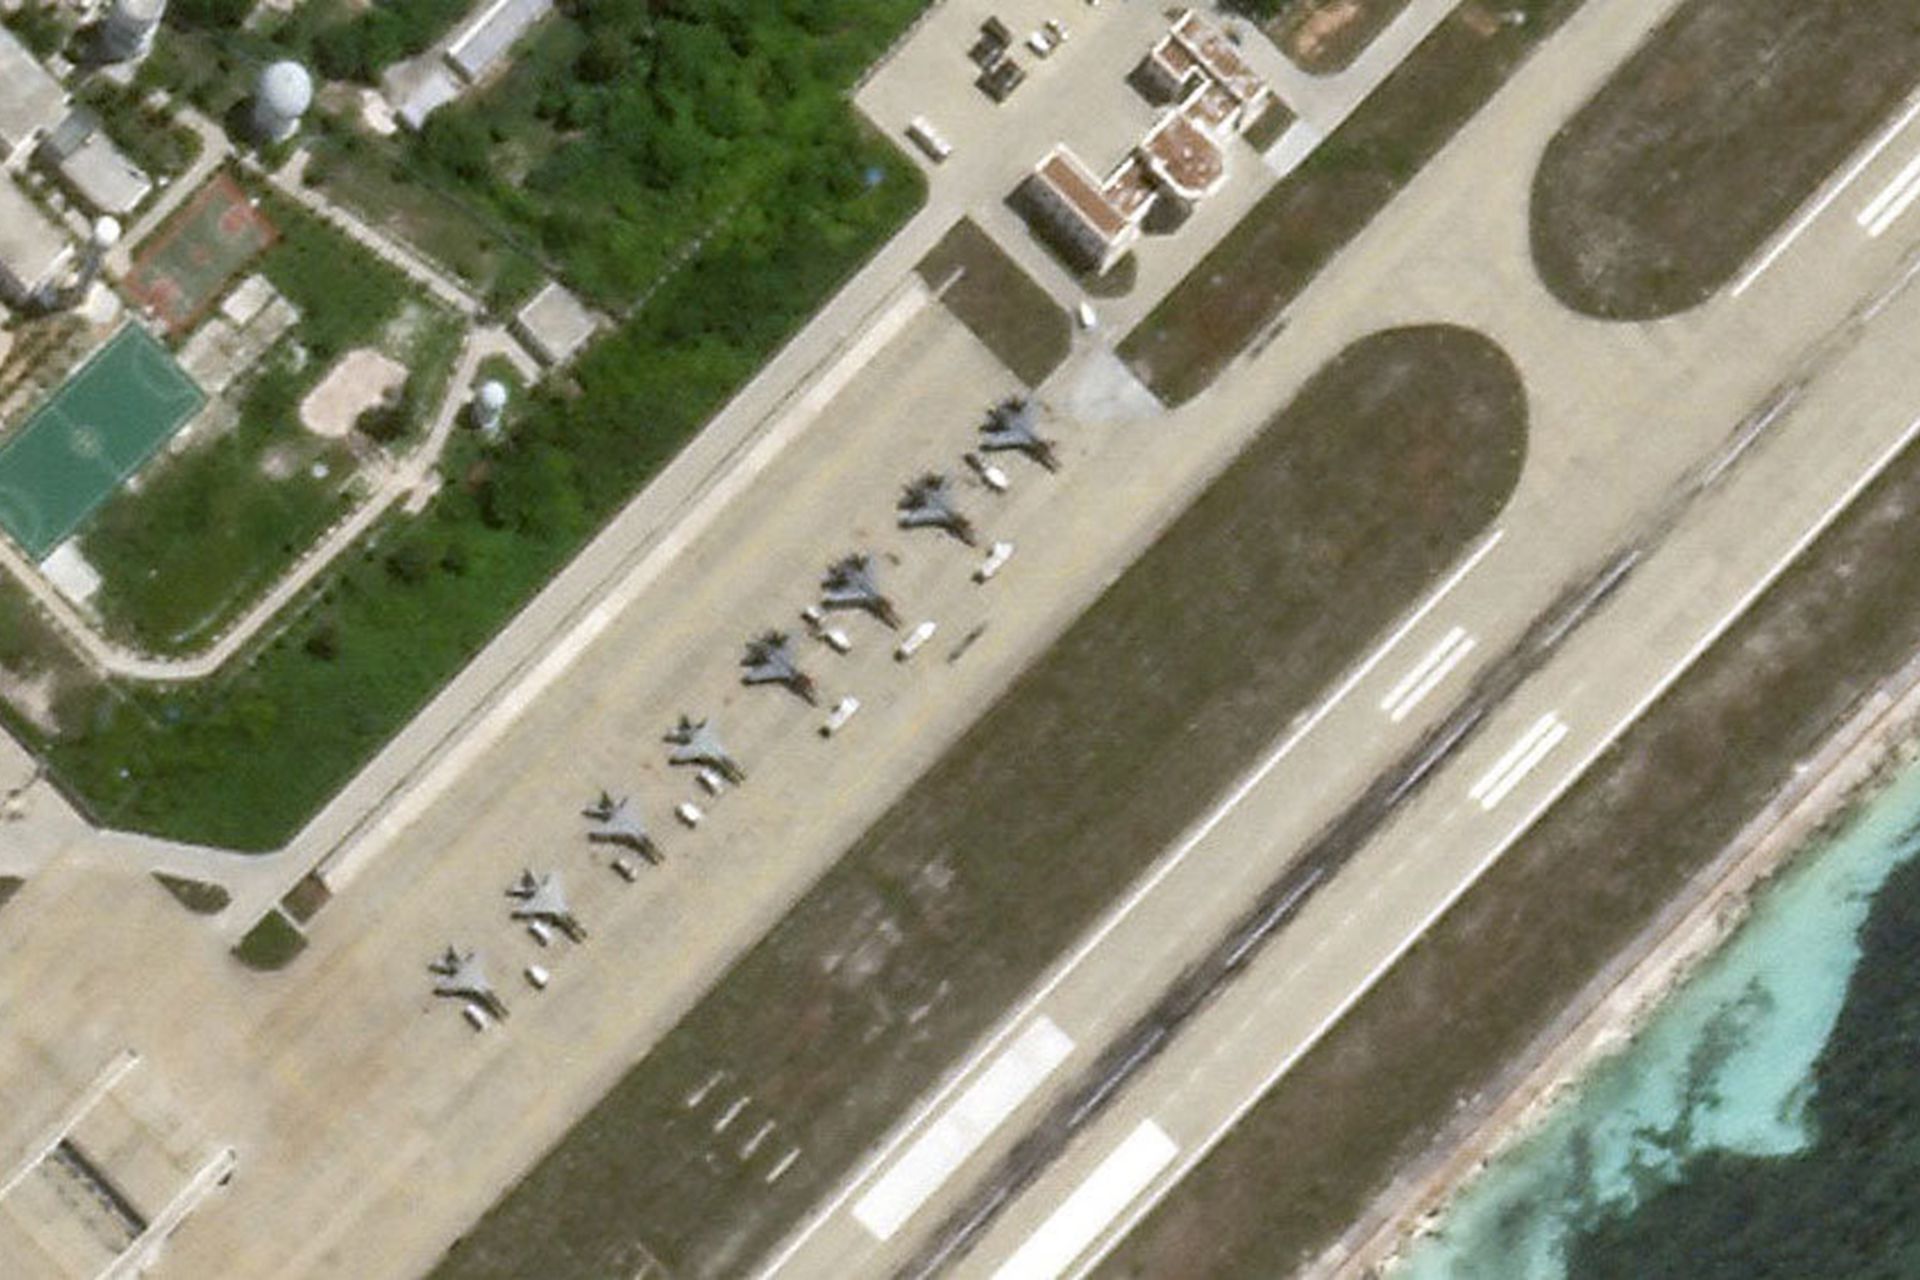 2020年7月，针对美军双航母在南海的活动，中国军方亦做出相应准备。图为卫星照显示至少有8架战机现身永兴岛机场。（微博@南海的浪涛）